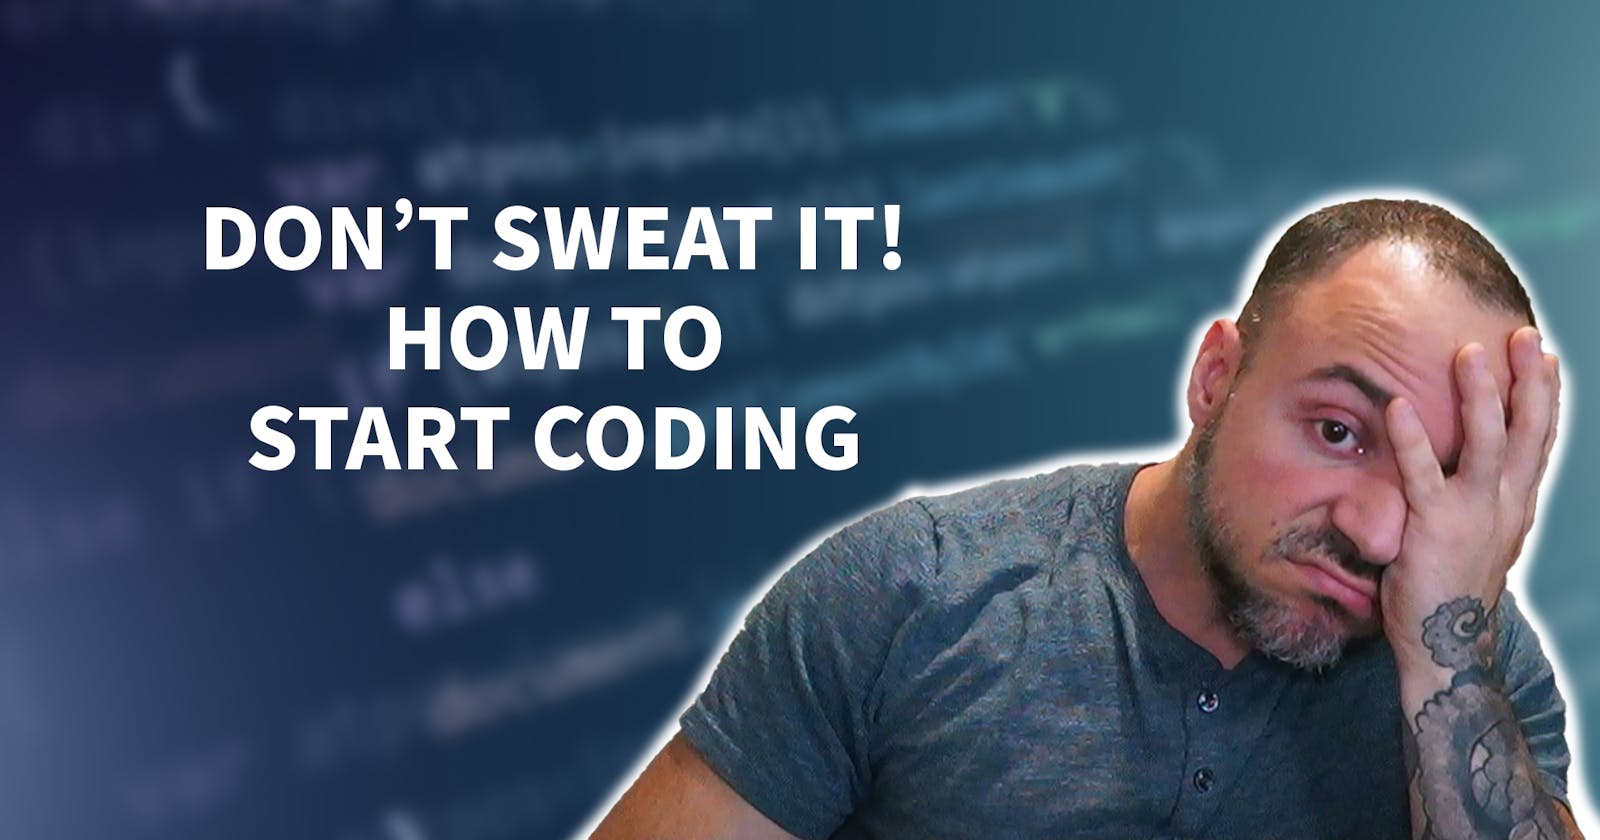 How To Start Coding - Starting From Zero